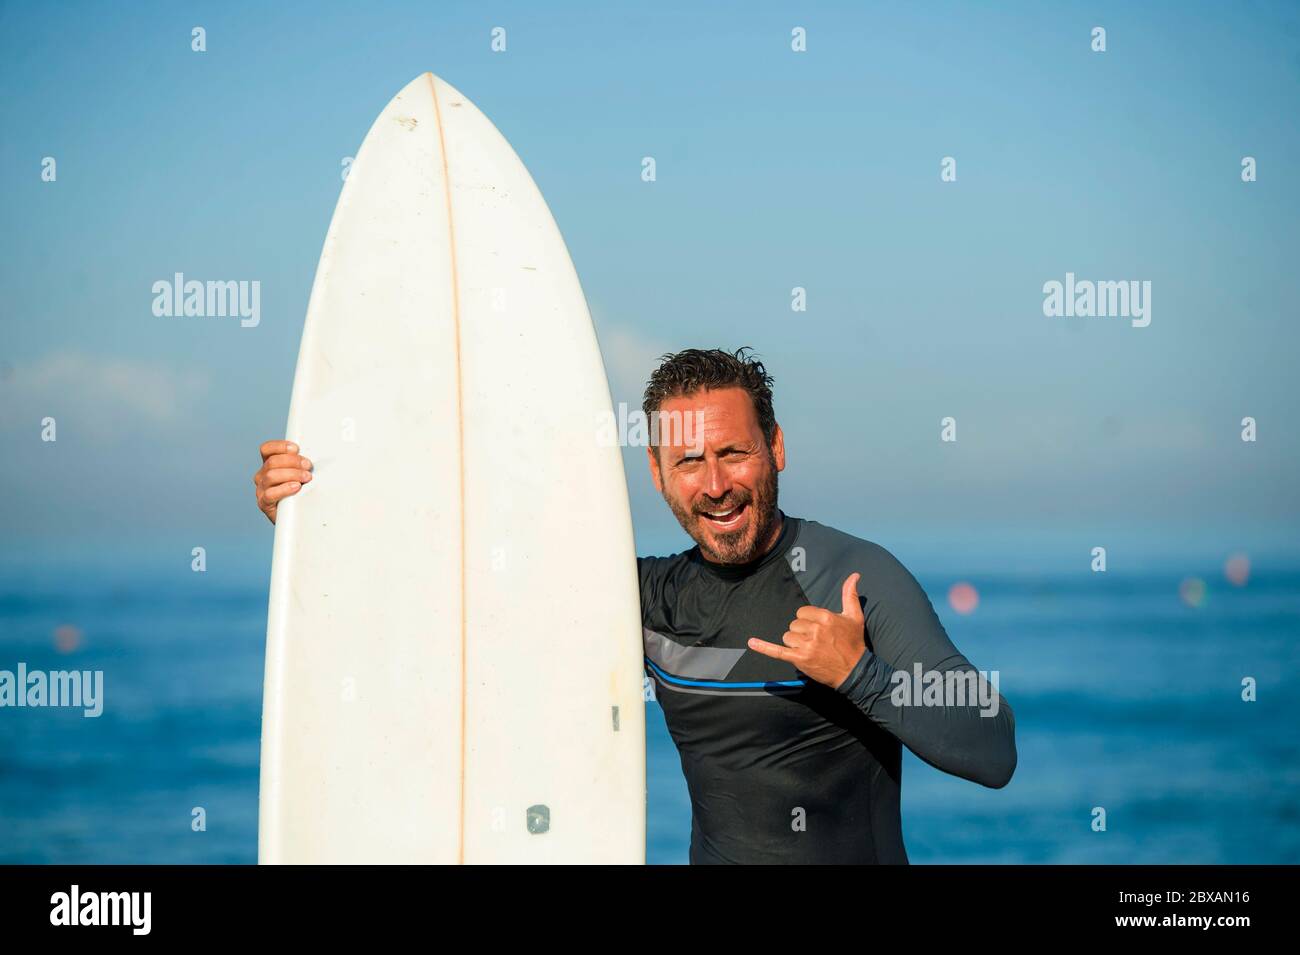 Lifestyle Strandportrait von schönen und attraktiven Surfer Mann in Neopren  Badeanzug halten Surfbrett posiert kühl nach dem Surfen genießen  Sommerwasser Stockfotografie - Alamy